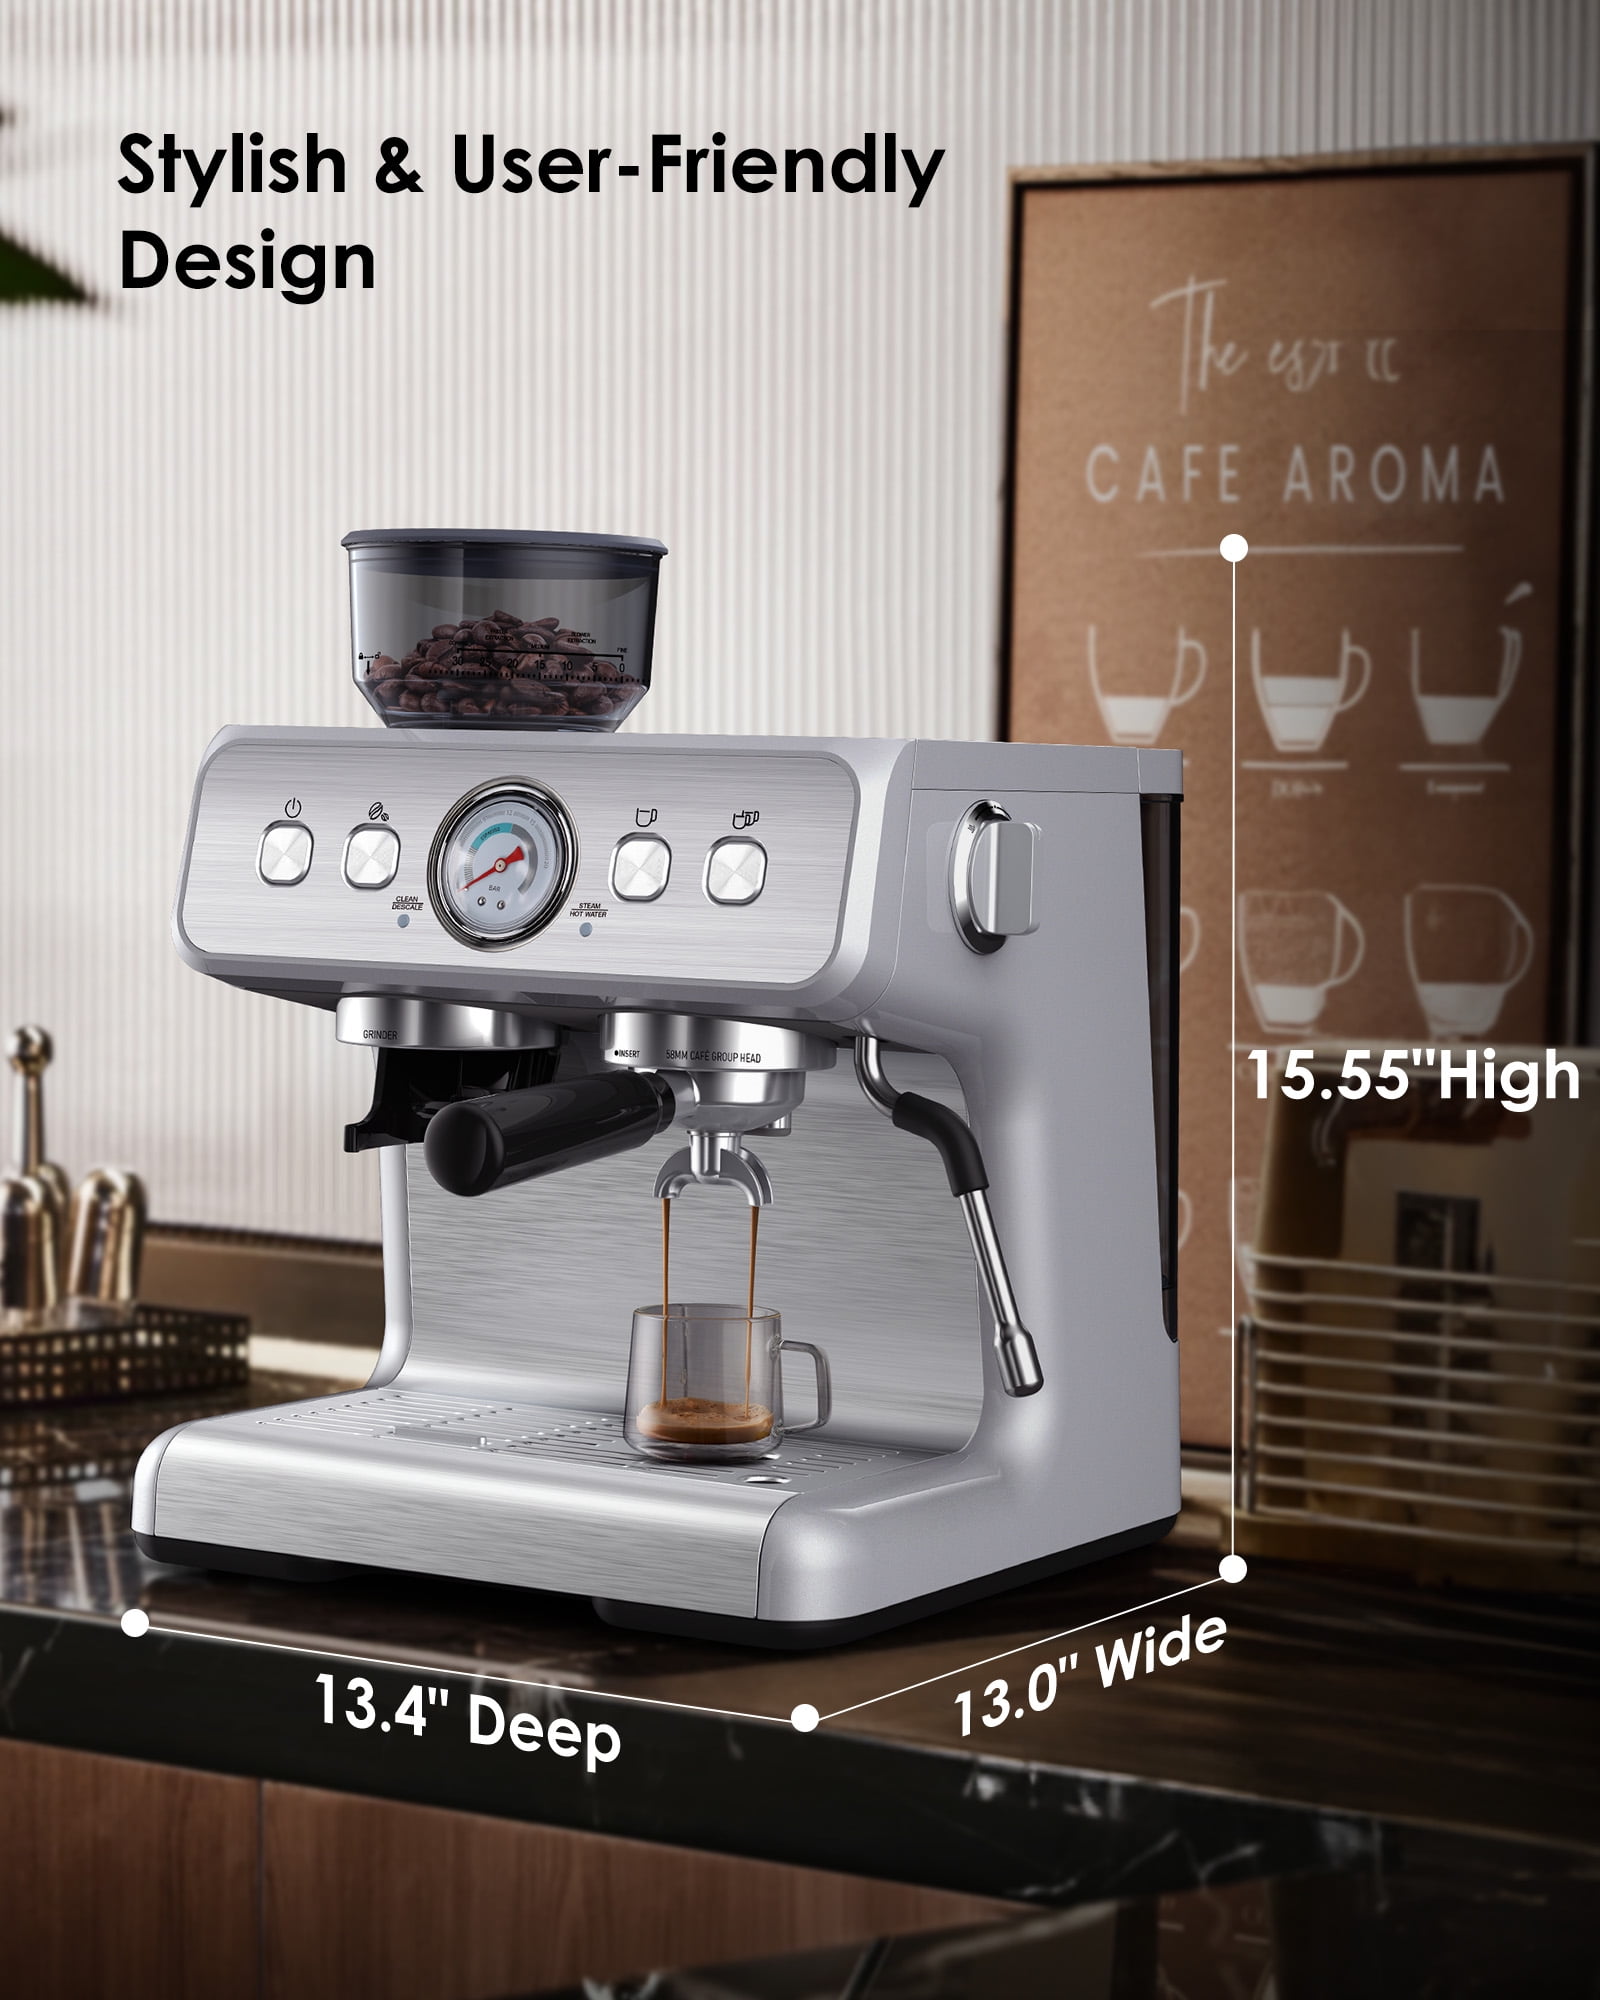 COWSAR Espresso Machine 15 Bar, Semi-Automatic Espresso Maker with